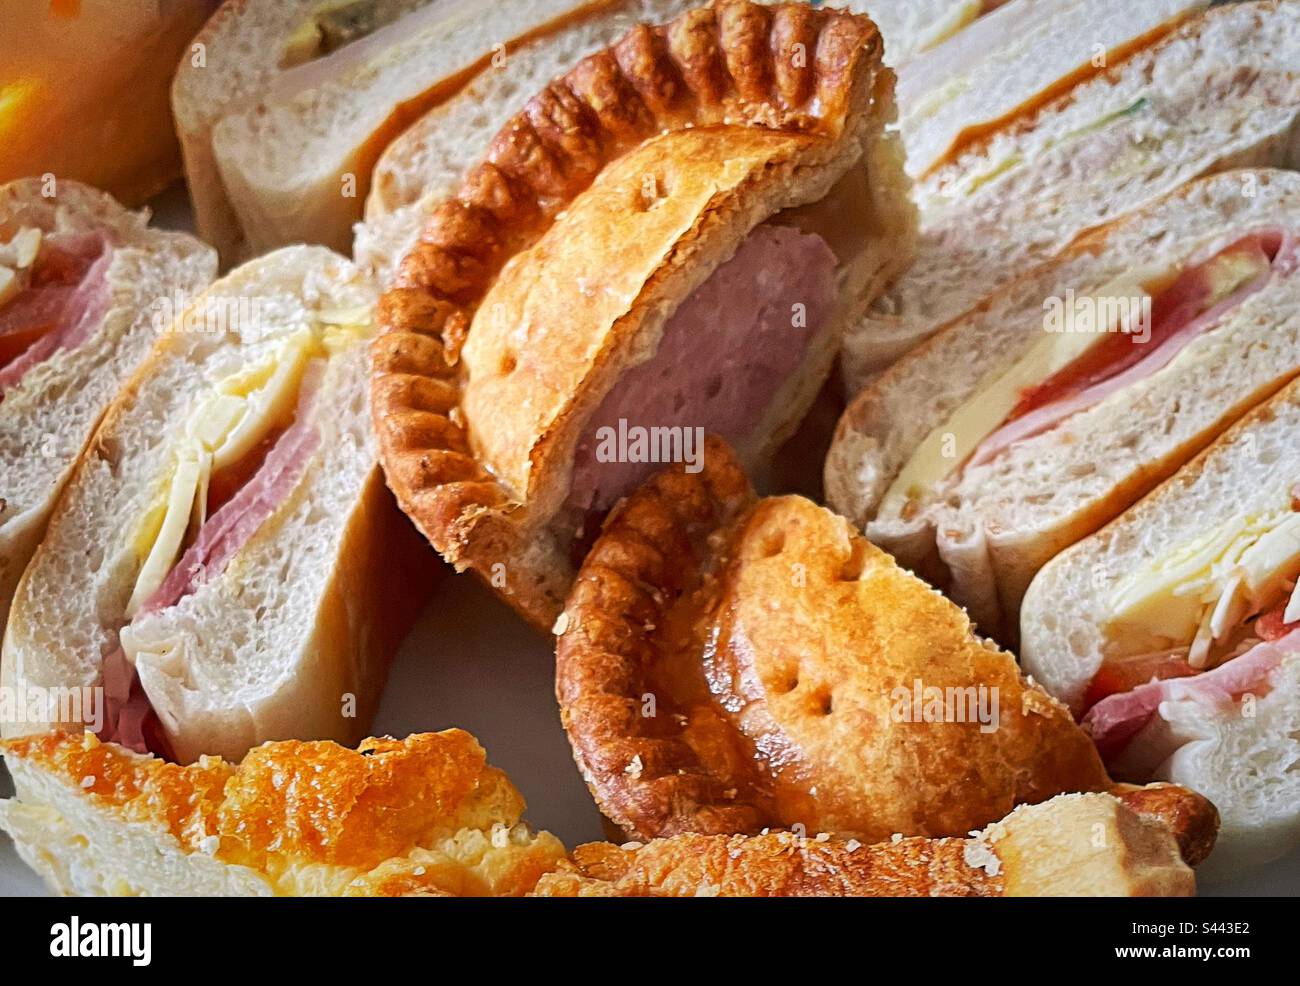 ‘Pork pie picnic’ a typically British picnic. Sandwiches, pork pie and quiche. Stock Photo